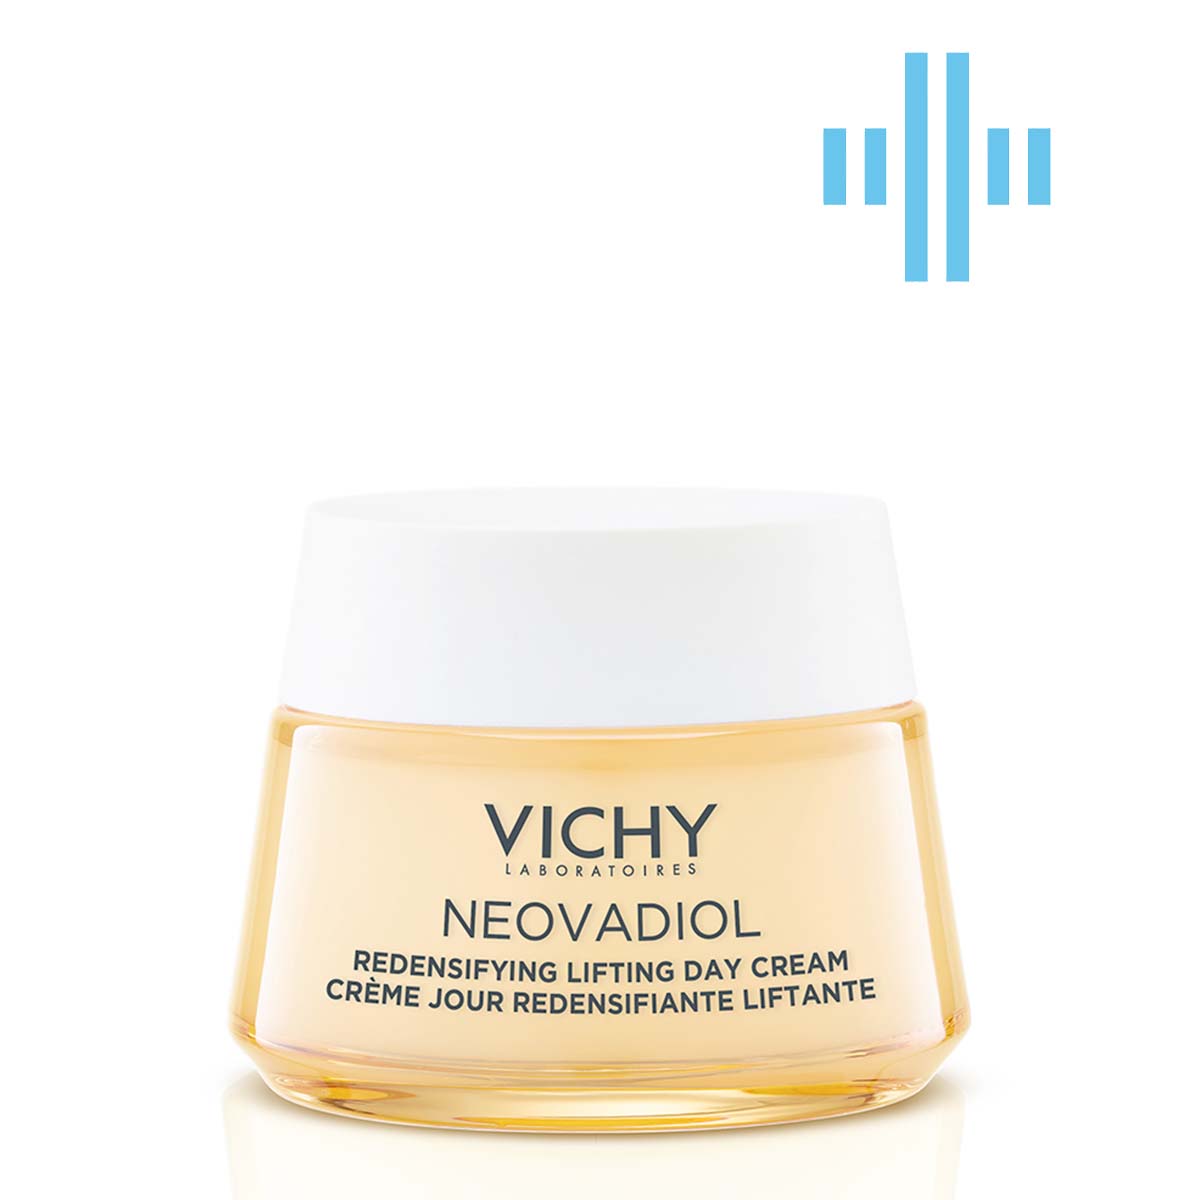 Дневной антивозрастной крем Vichy Neovadiol для увеличения плотности и упругости сухой кожи лица, 50 мл (MB422700) - фото 1